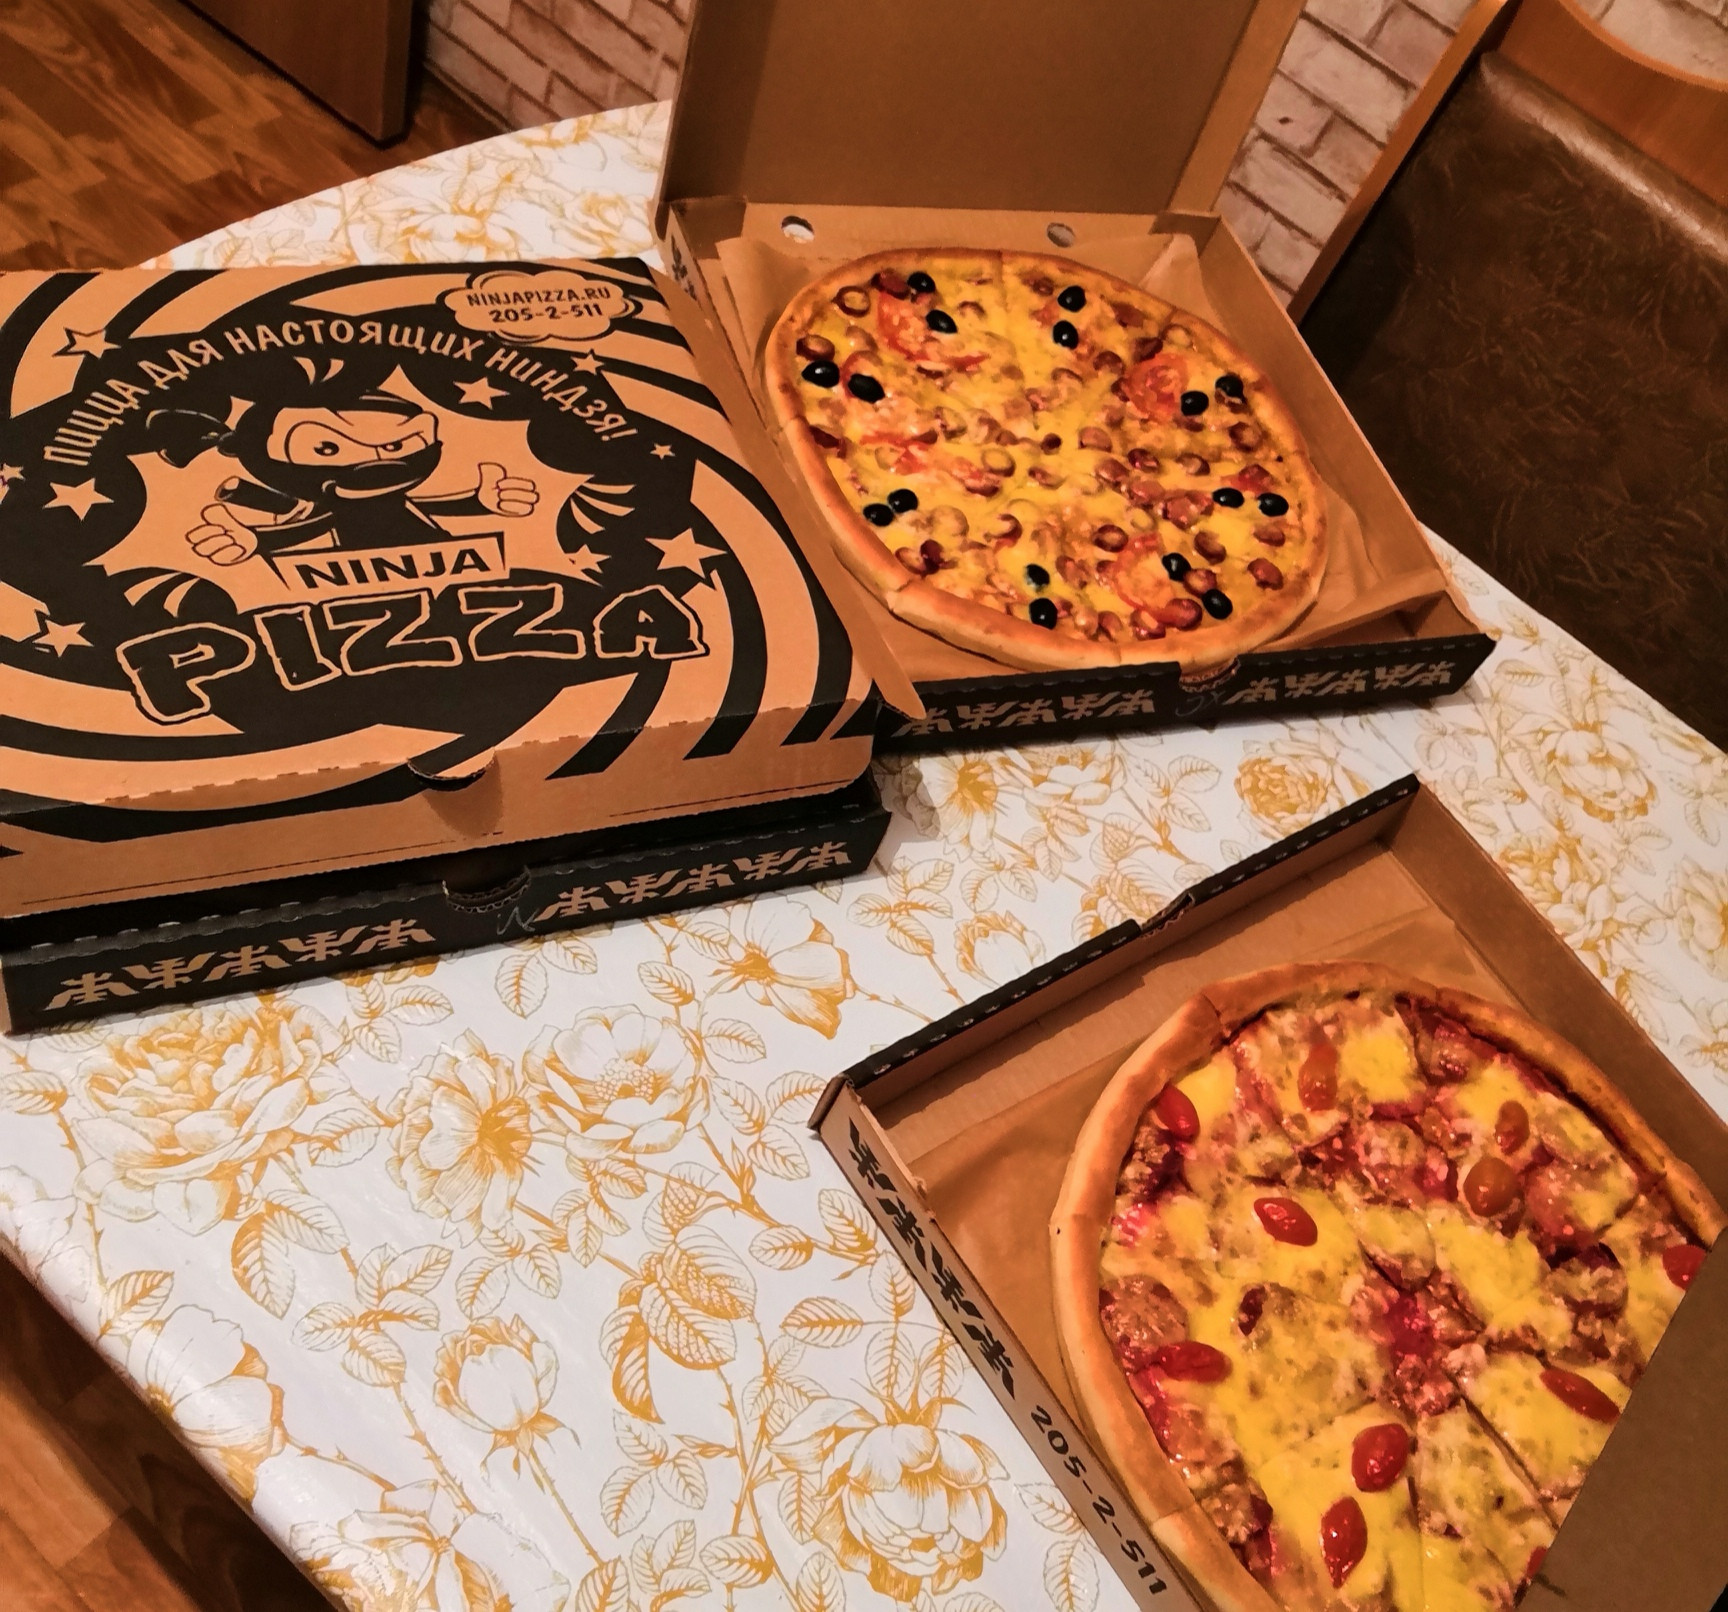 быстрая доставка пиццы в красноярске фото 81